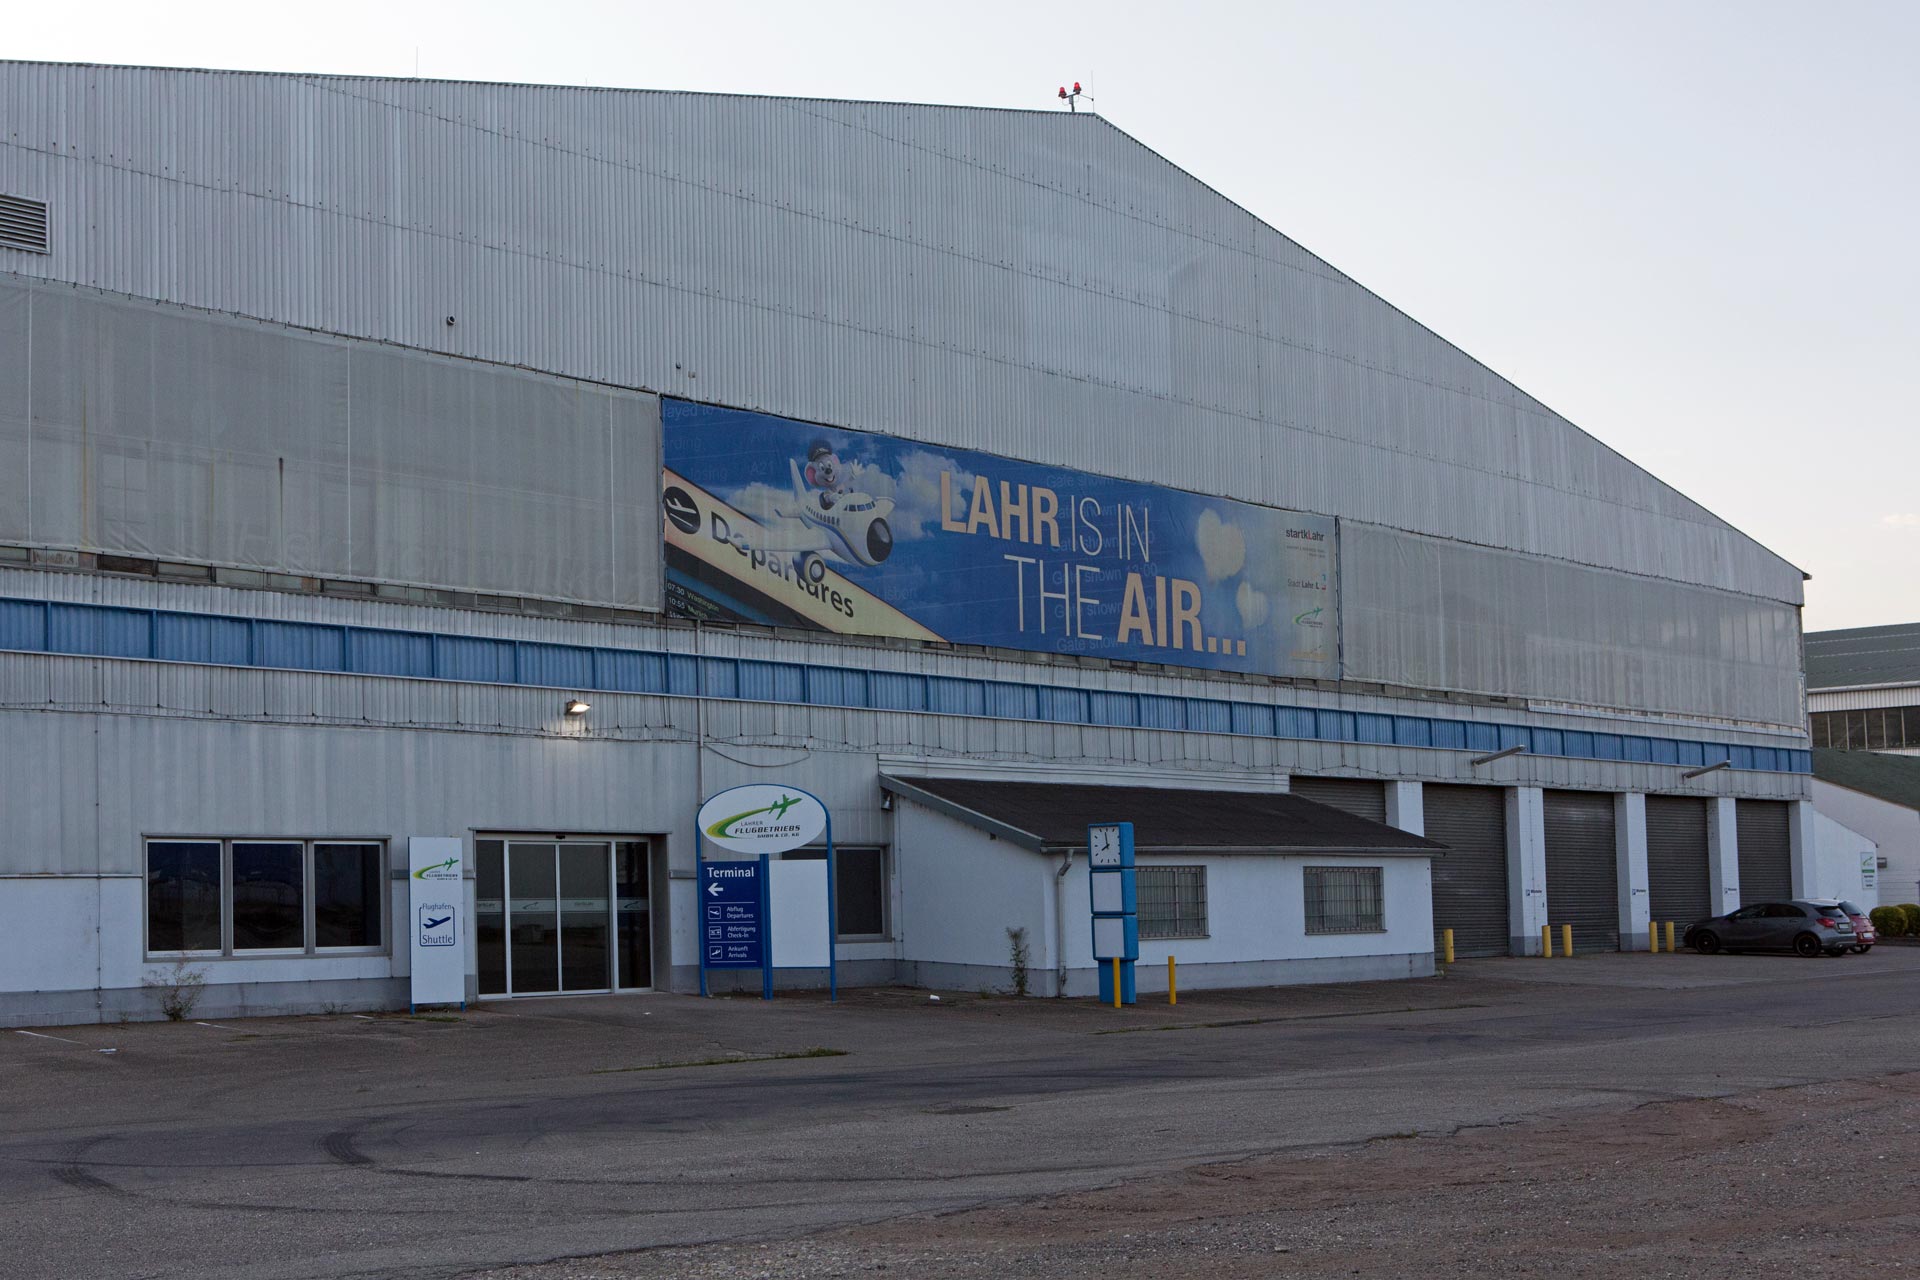 Zwei Maschinen pro Tag starten von dem kleinen Regionalflughafen Lahr.